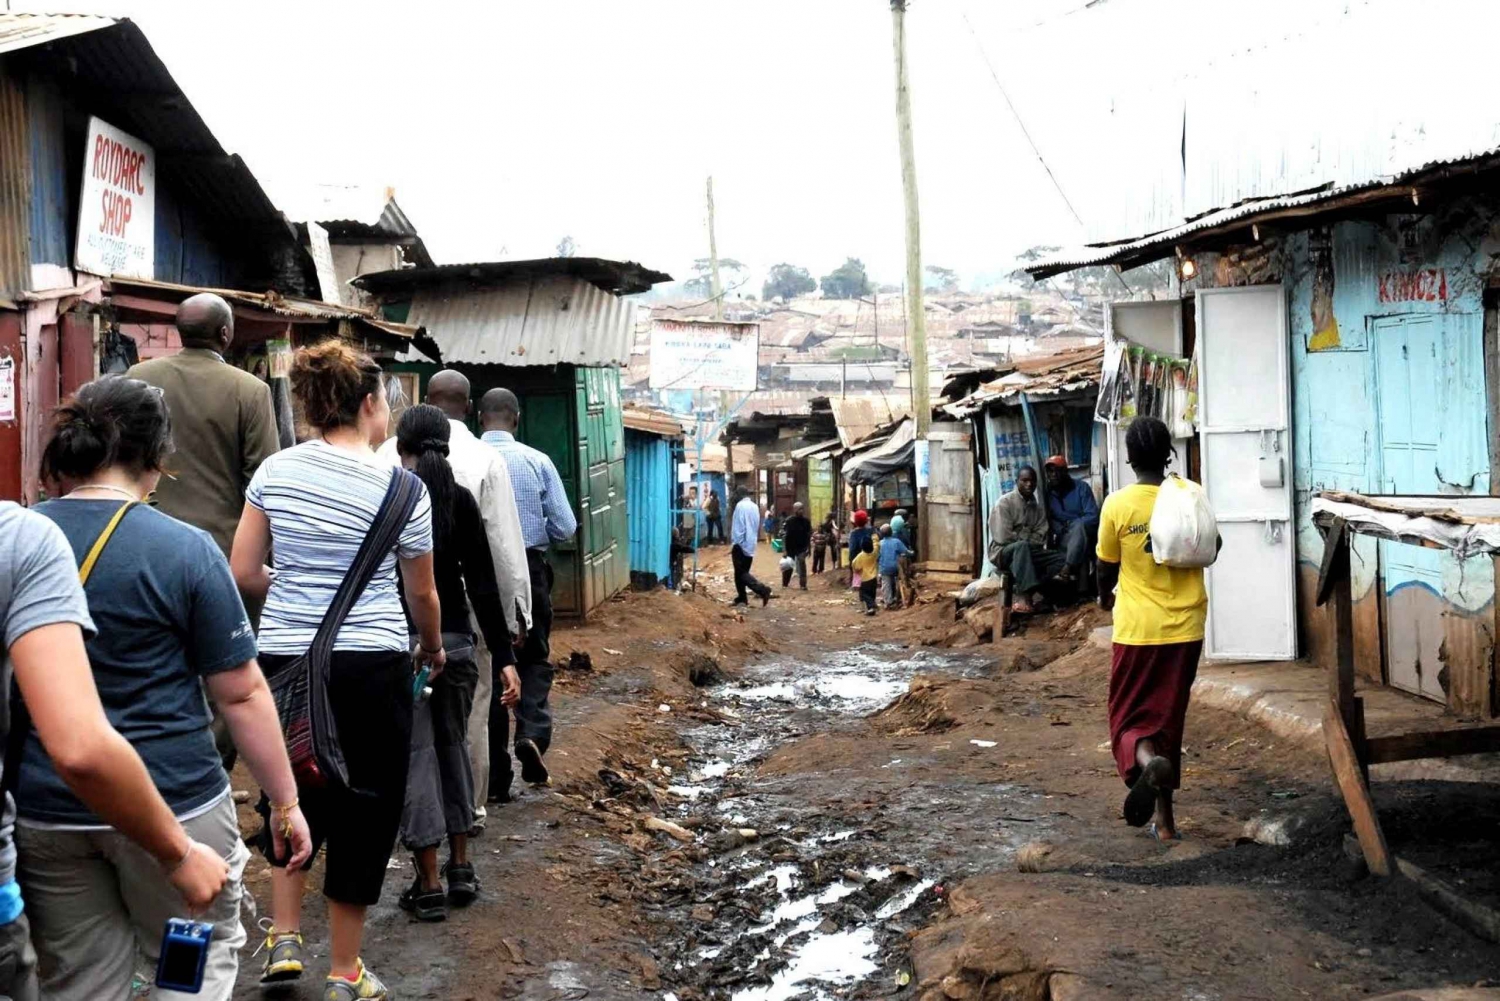 Vandring i slummen i Kibera